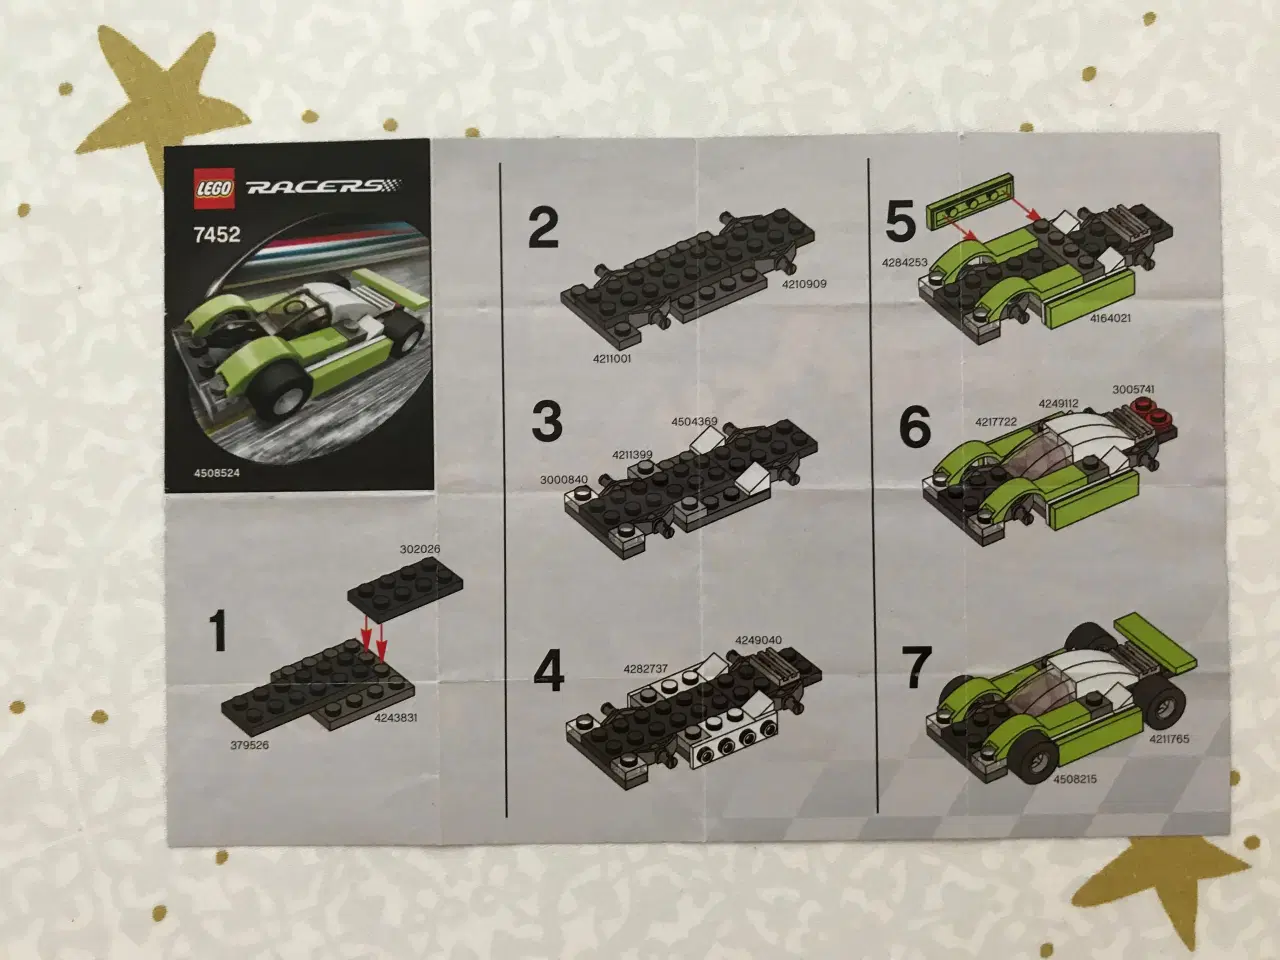 Billede 2 - LEGO Racers: 7452